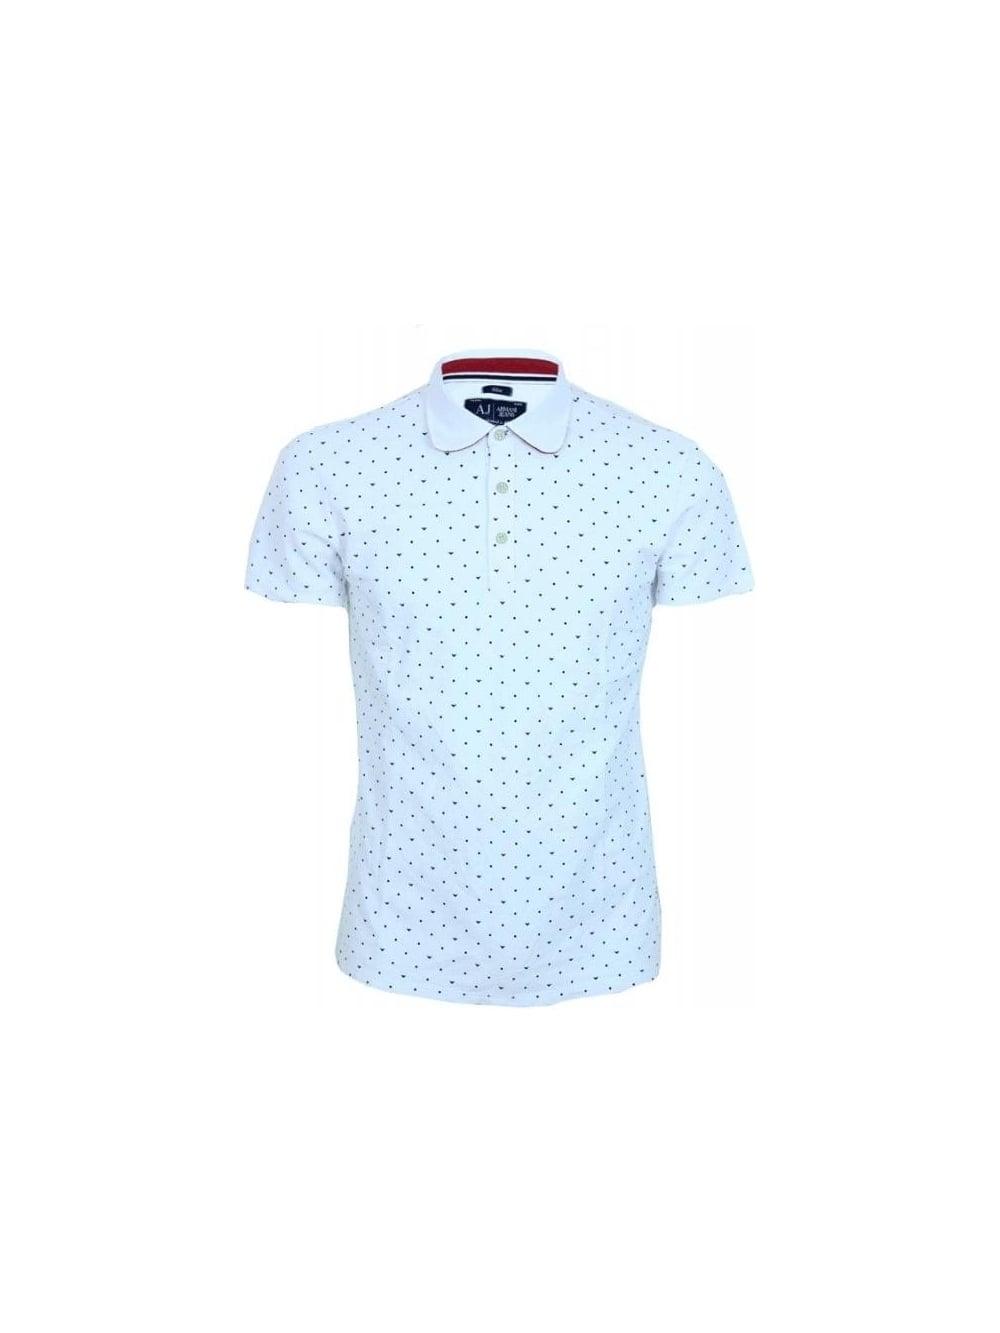 White and Blue Dot Logo - Armani Jean Dot Logo Slim Fit Polo in White